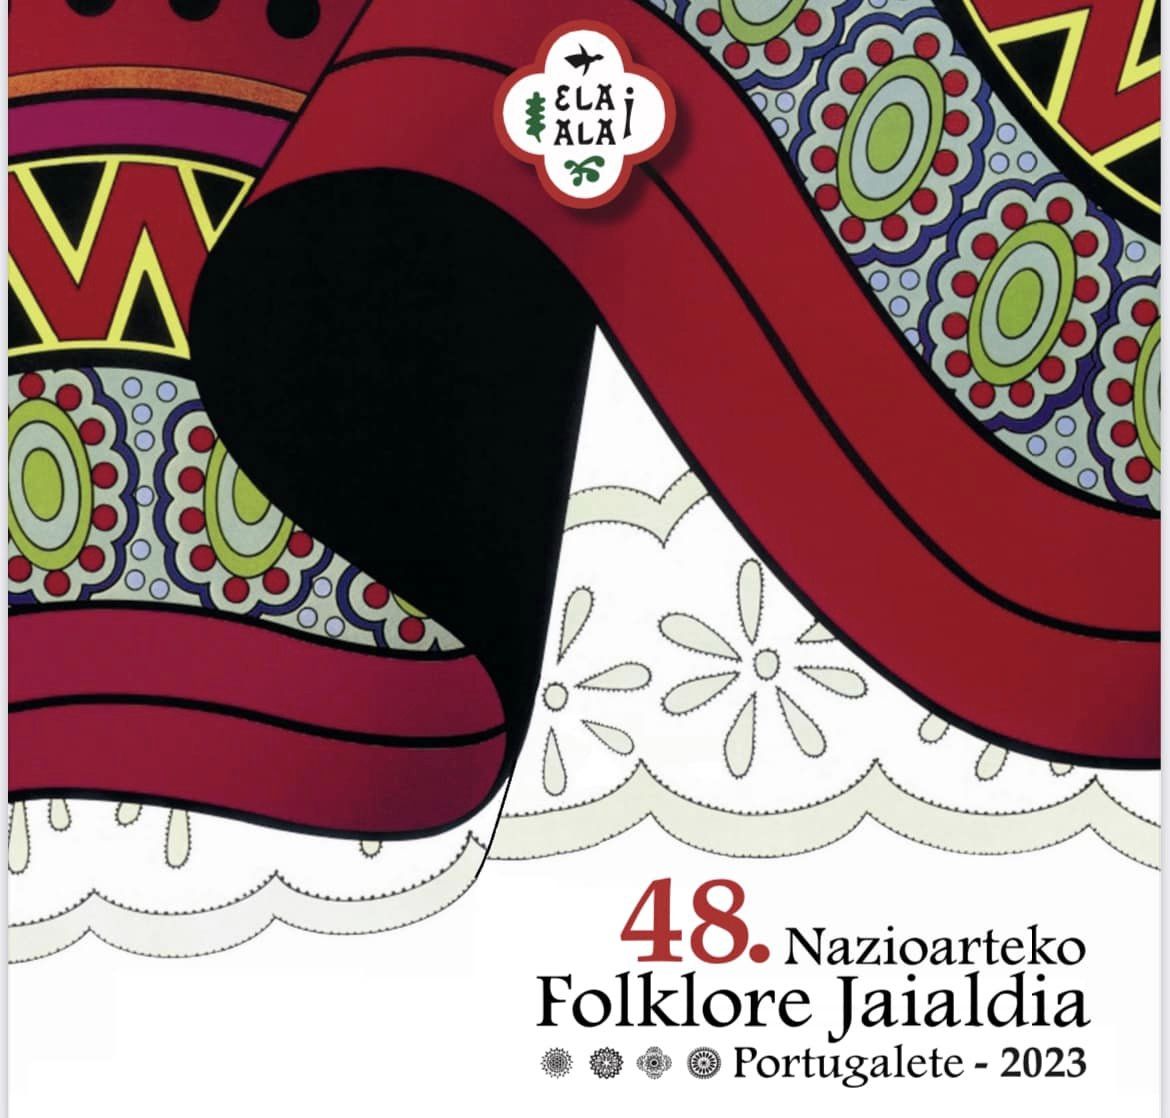 Nazioarteko Folklore Jaialdia - Portugalete